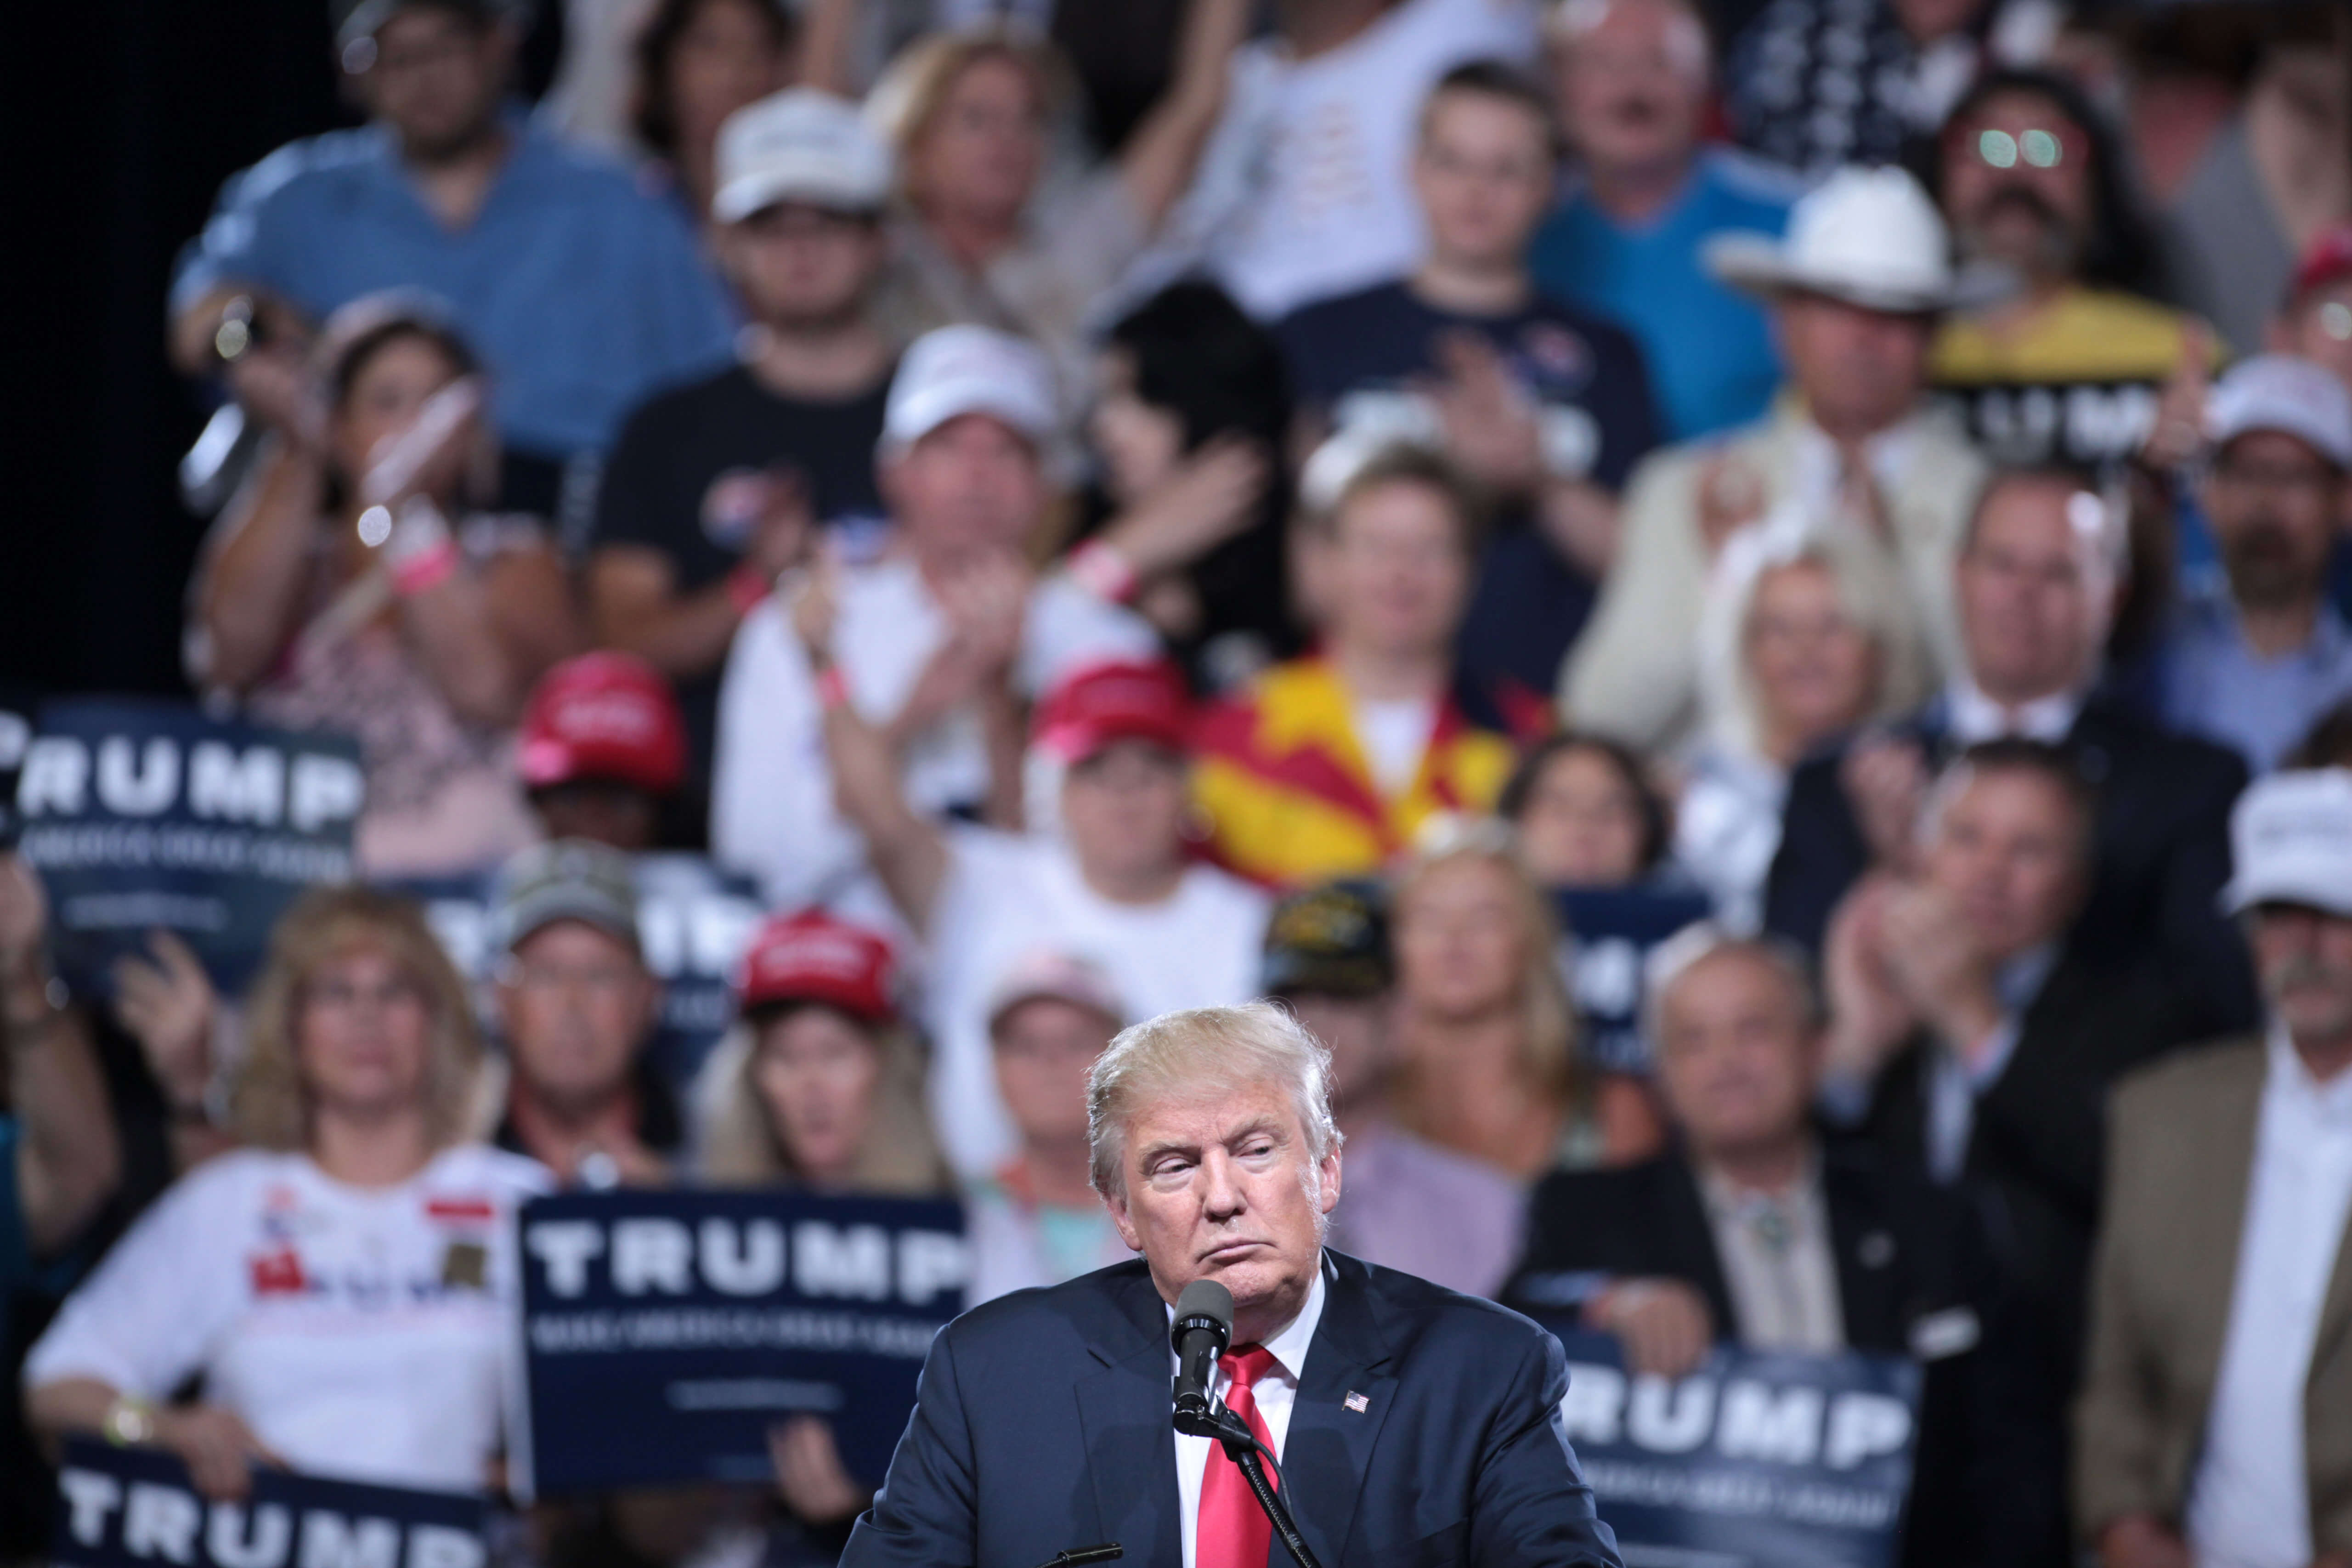 Donald Trump spreekt supporters toe bij een campagne rally. © Gage Skidmore/Flickr